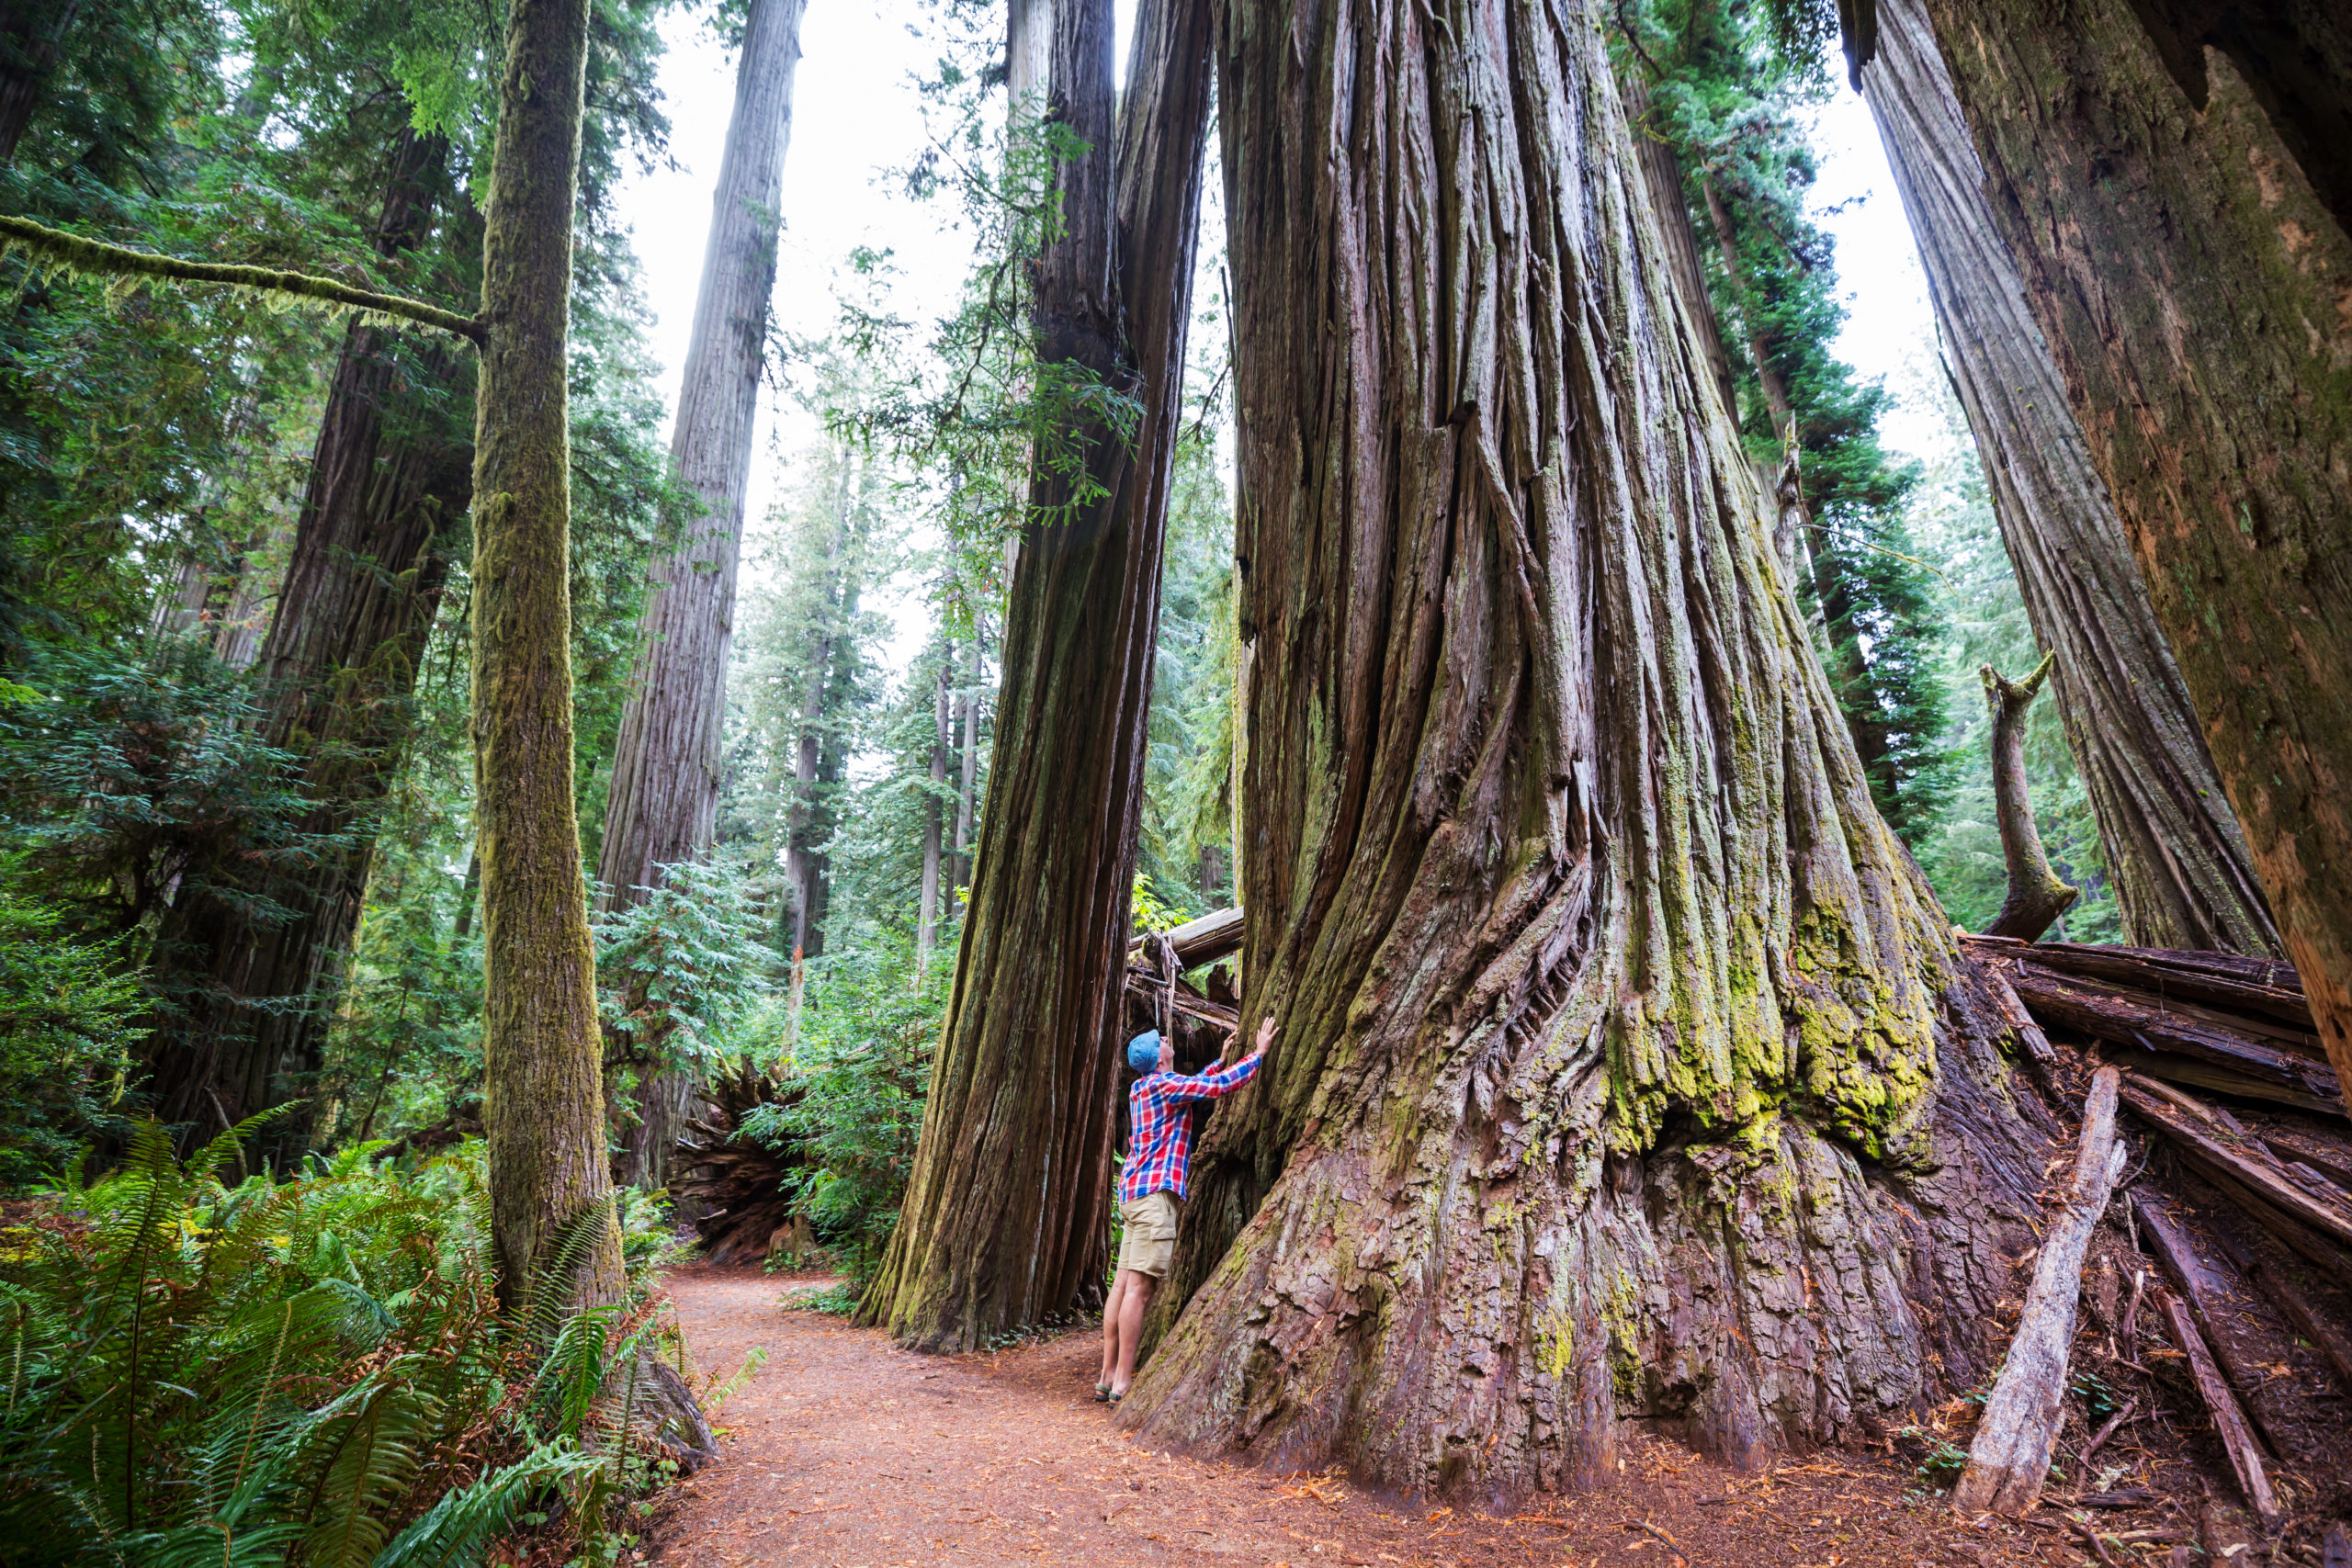 Take A Stroll Through Oregon’s Gorgeous Giant Redwood Trees